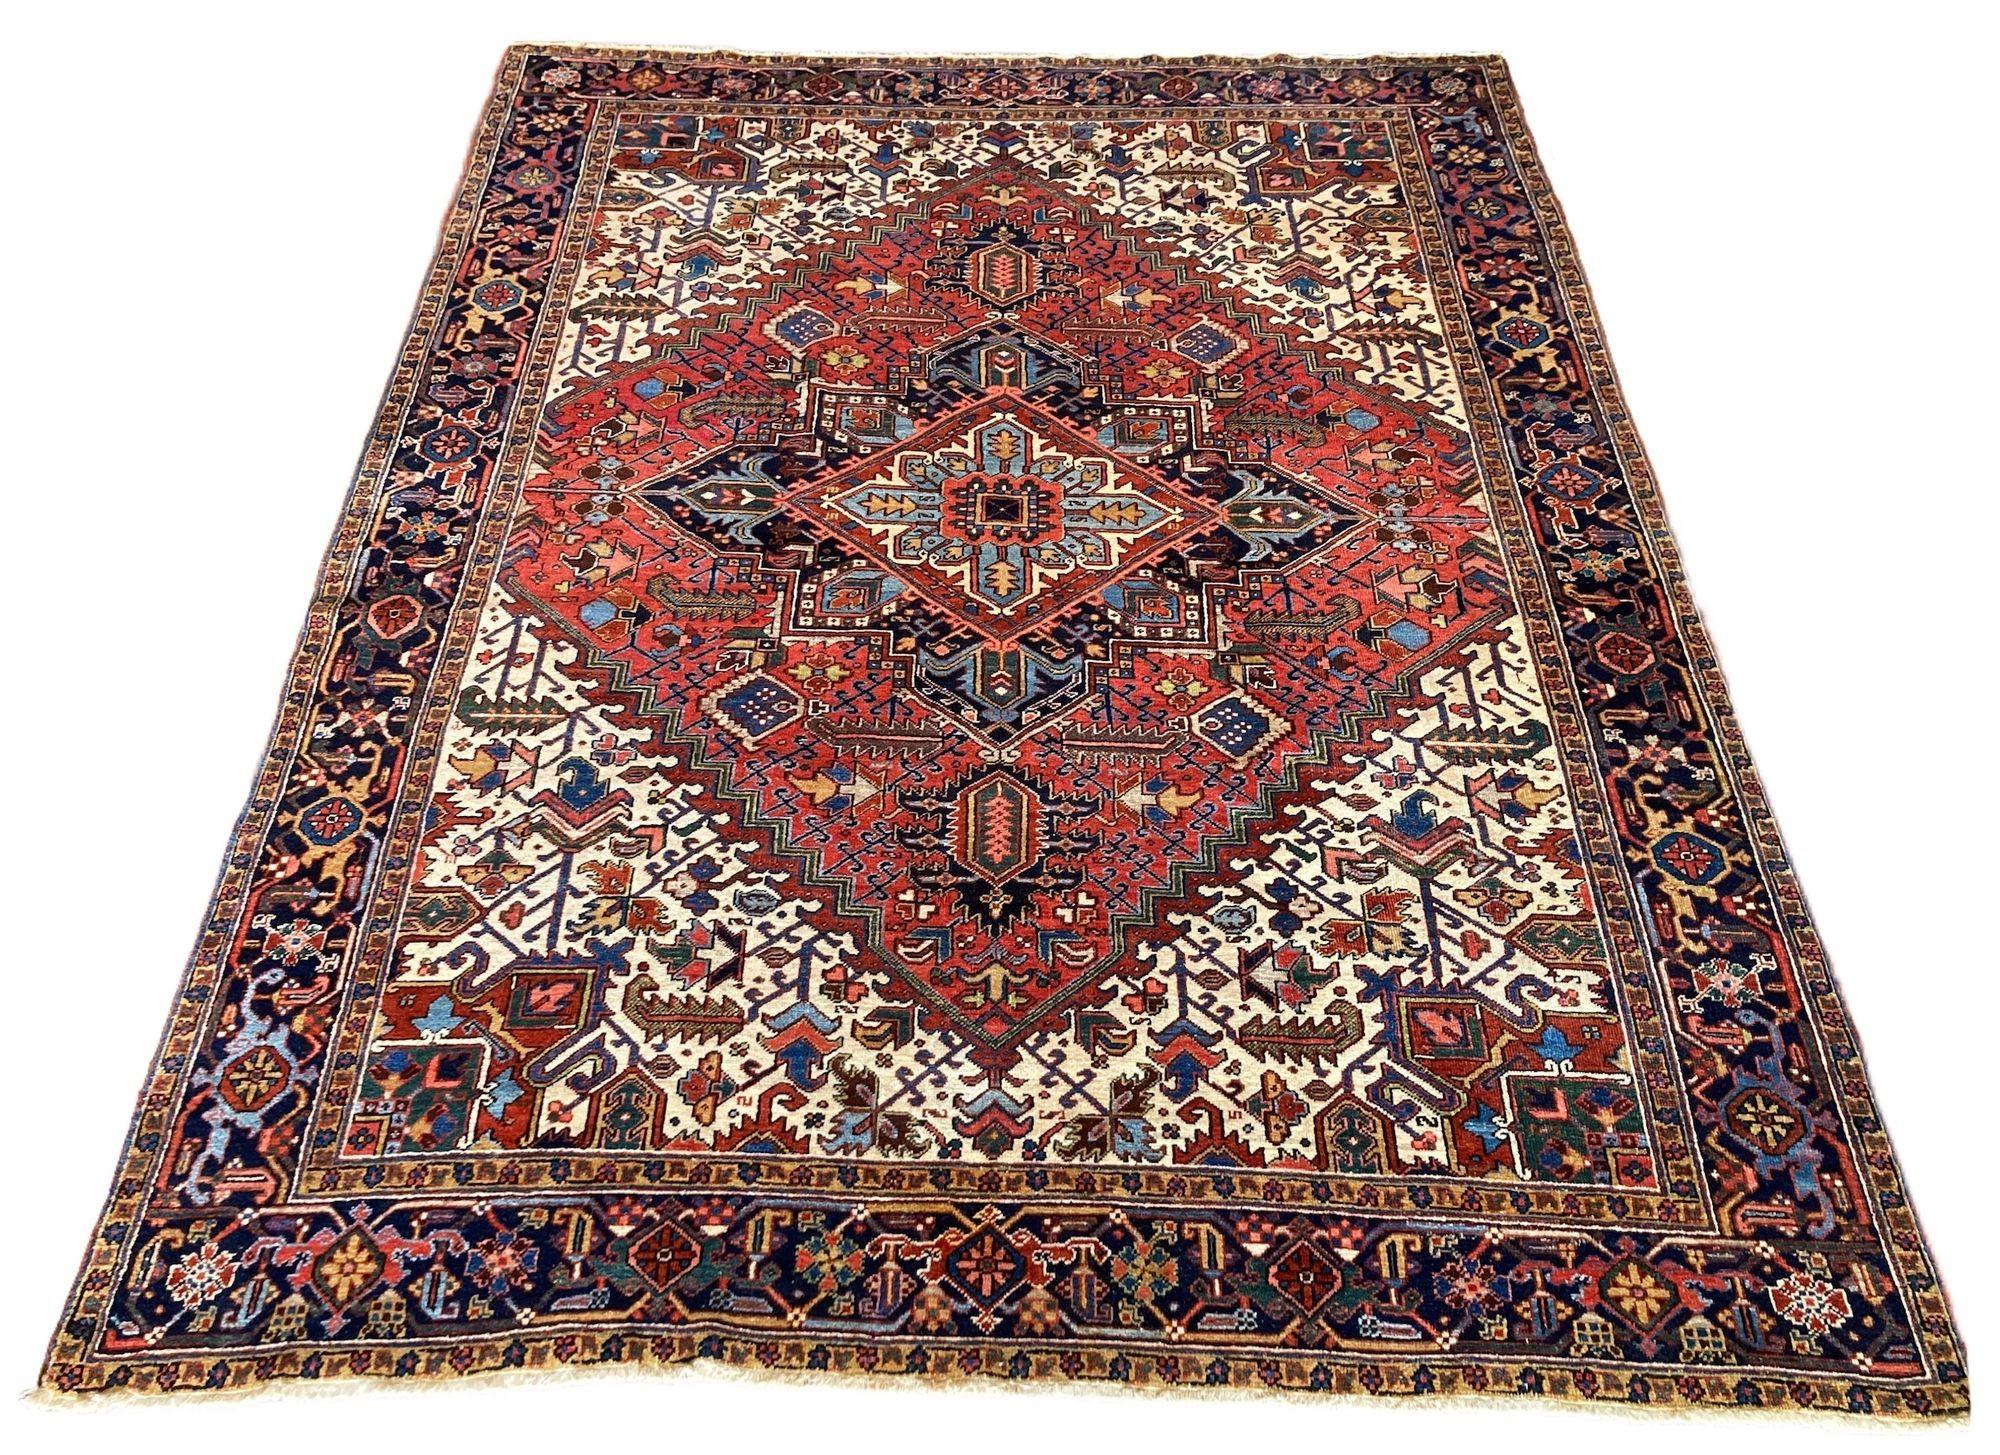 Ein schöner antiker Heriz-Teppich, handgewebt um 1910 mit einem traditionellen geometrischen Muster auf einem Terrakotta-Feld und einer tiefen indigoblauen Bordüre. Ein besonders ausgewogenes Design mit großen elfenbeinfarbenen Eckzwickeln und